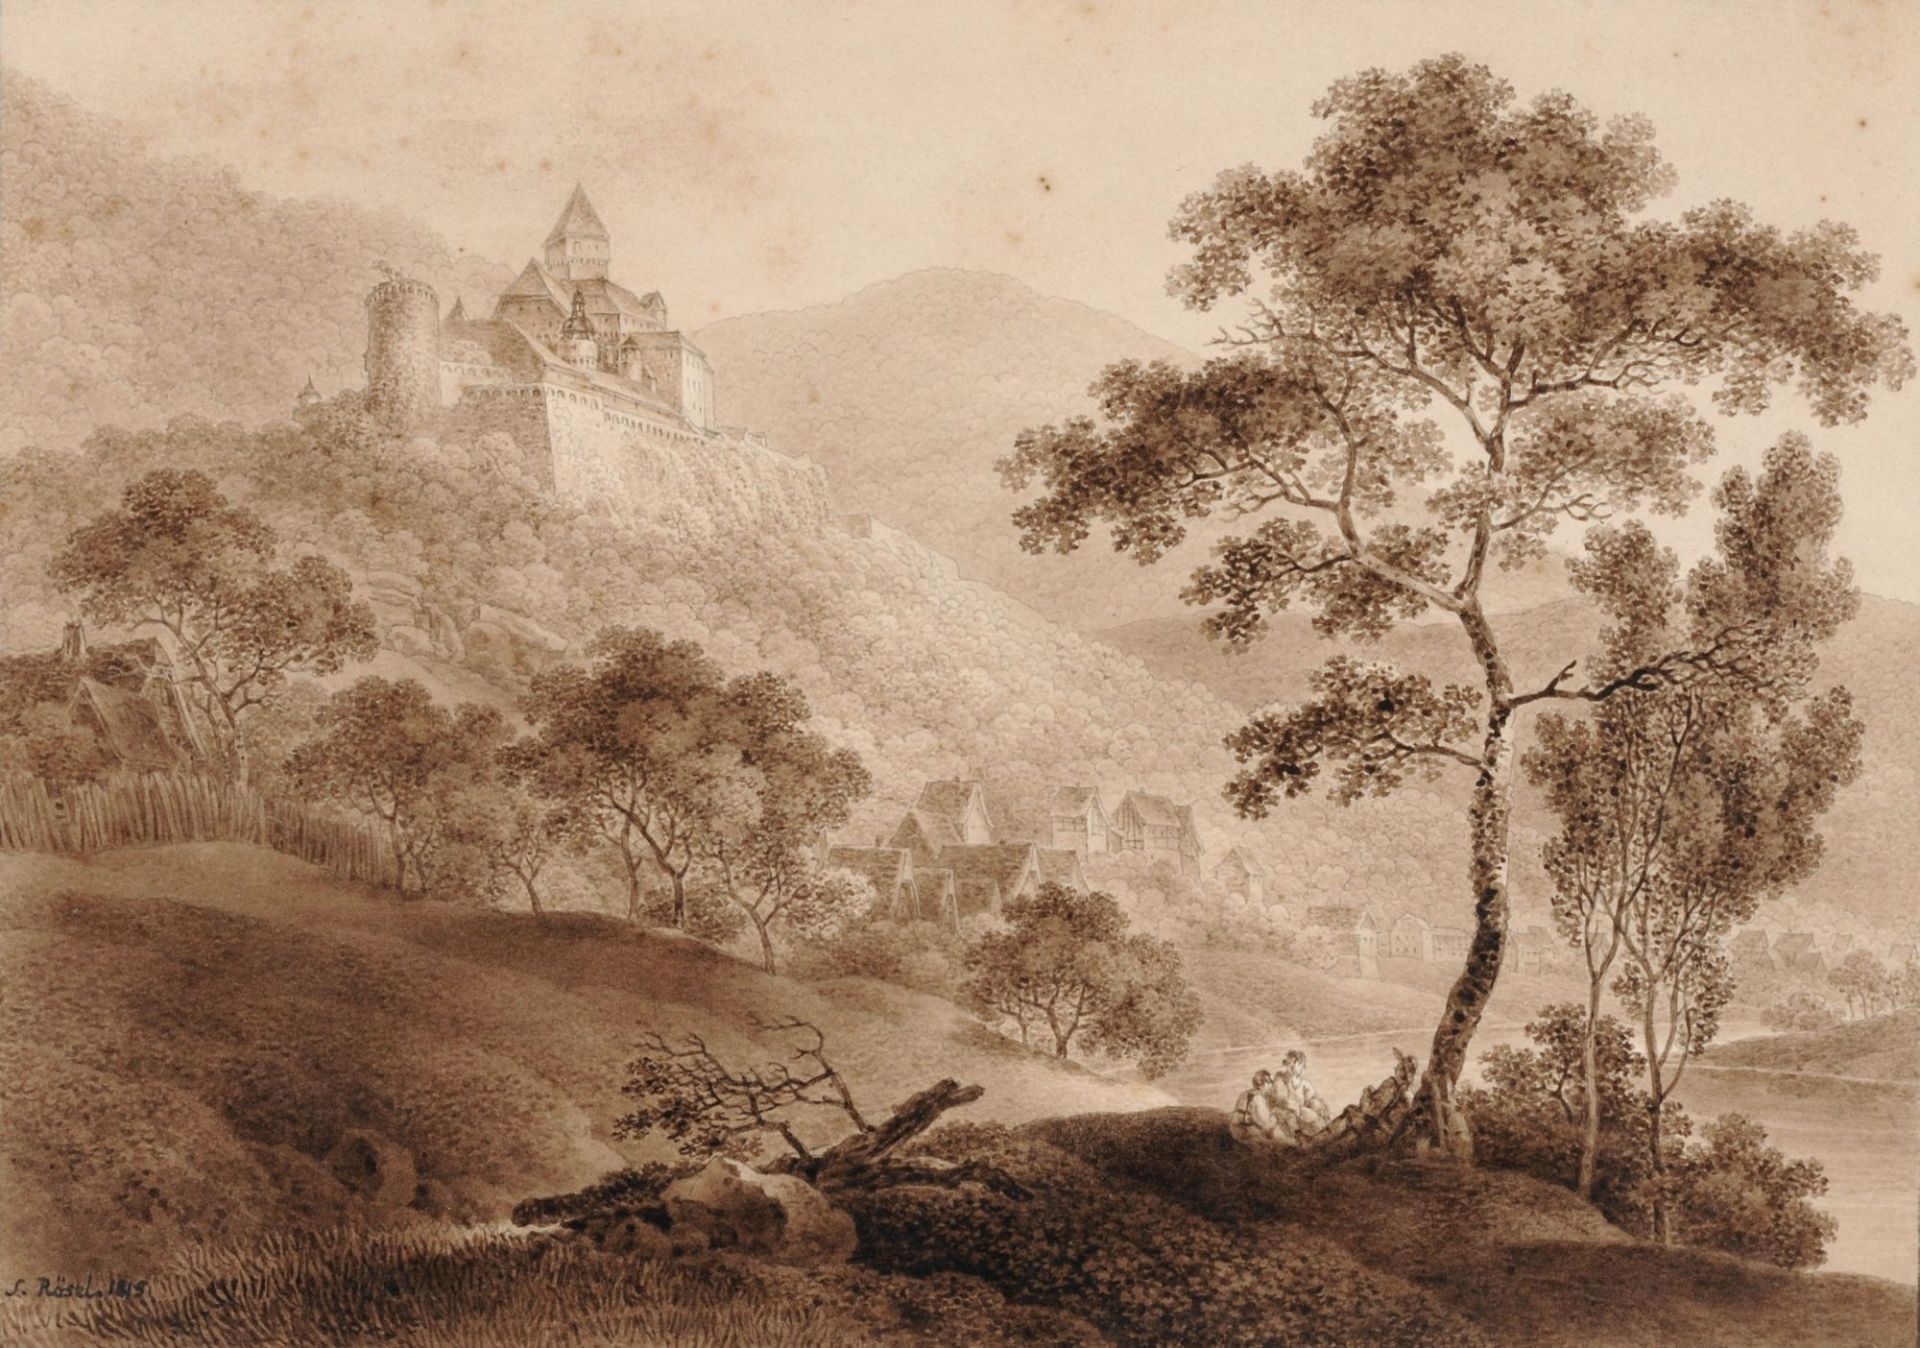 Johann Gottlob Samuel Rösel, Festung Zwingenberg, Ansicht vom Neckar / Festung Zwingenberg, Ansi